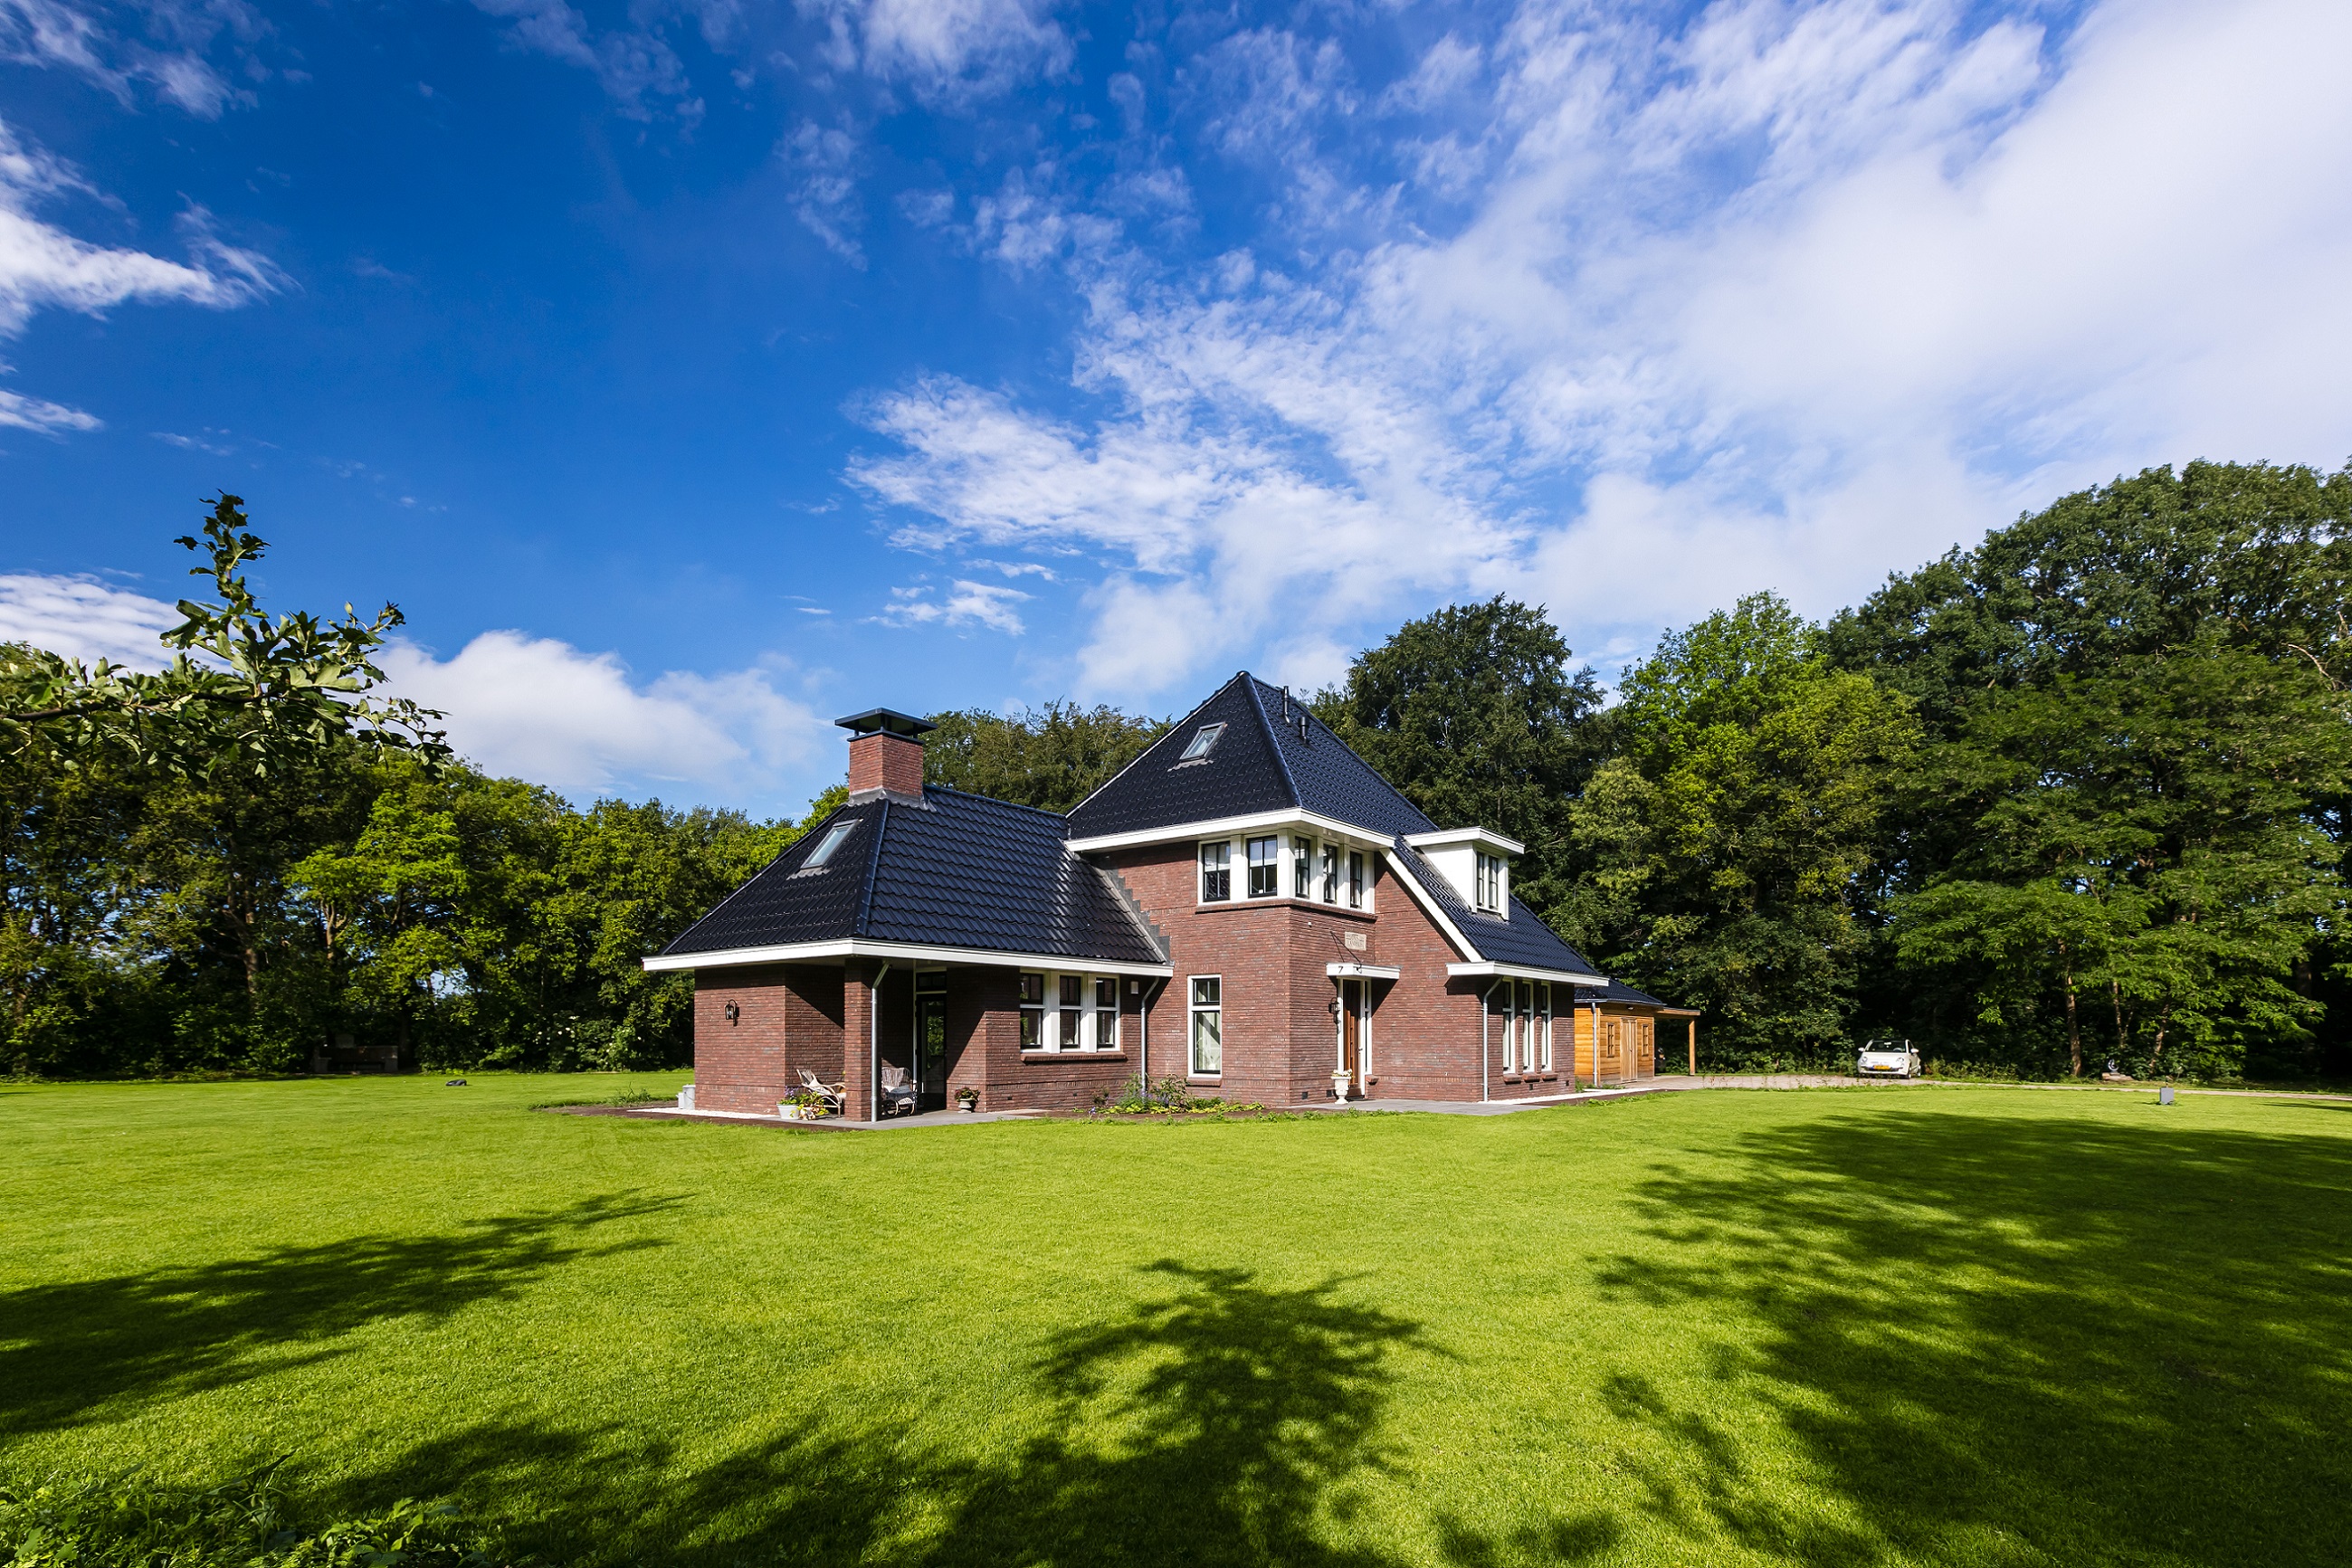 Foto: Landhuis bouwen   Villa bouwen   Landhuis te Ede   Lichtenberg Exclusieve Villabouw  2 